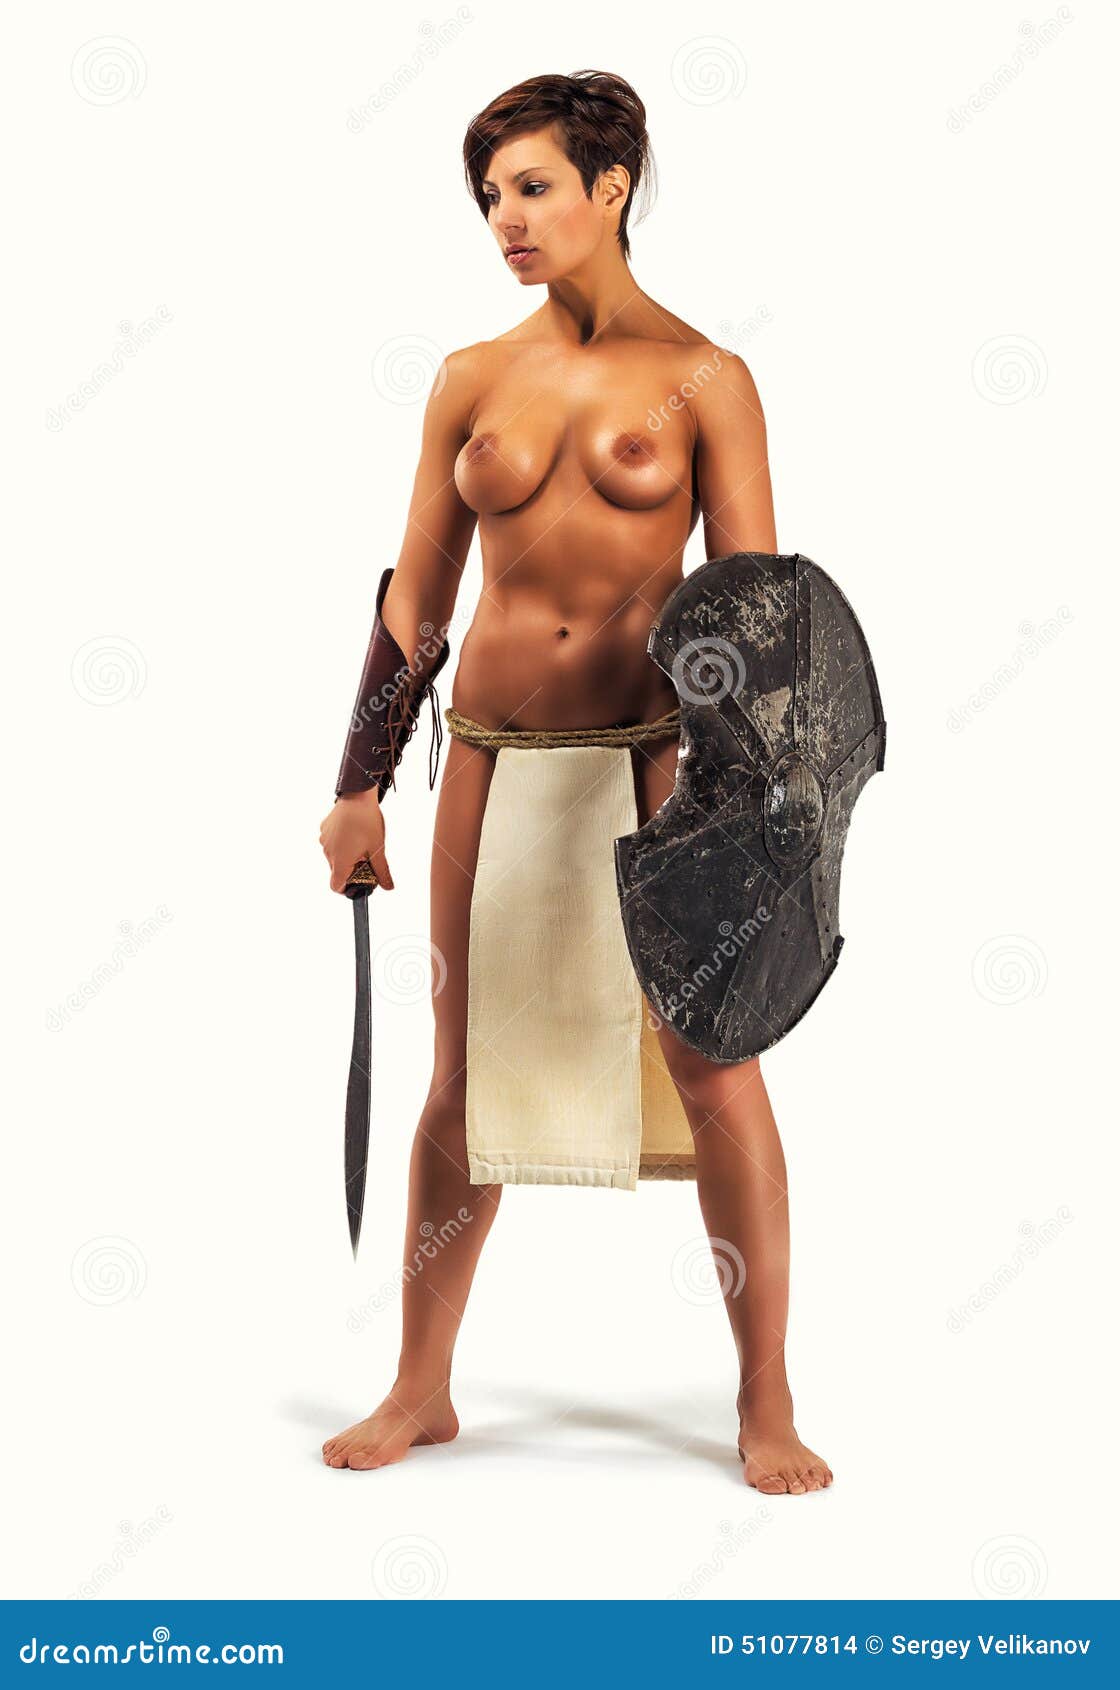 Nude warrior women